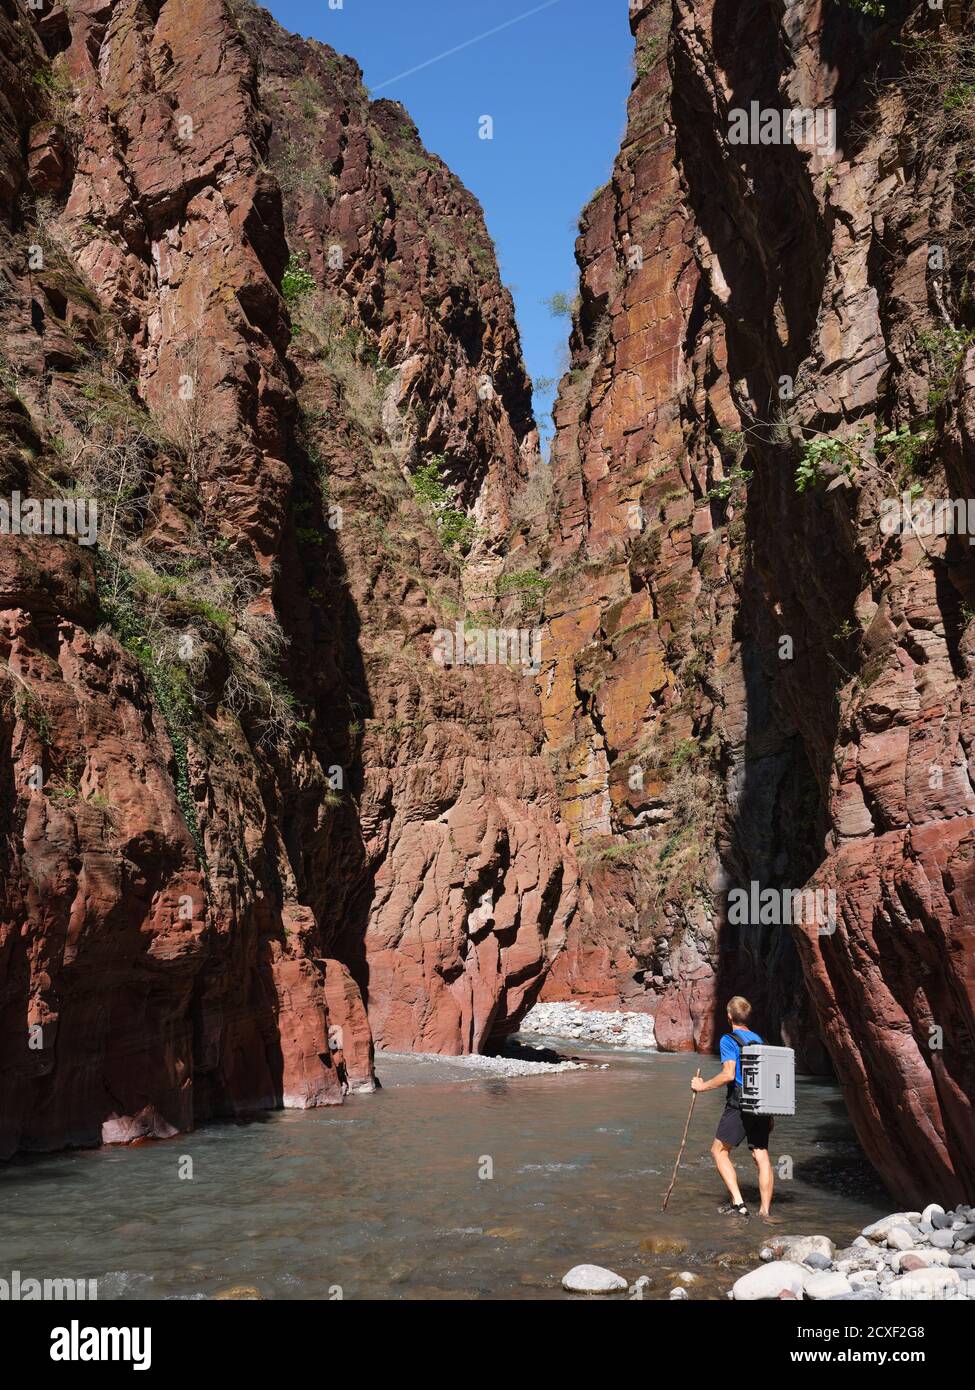 Escursionista che guastano il fiume Var con uno zaino impermeabile in custodia rigida in fondo a un profondo canyon rosso. Daluis Gorge, Guillaumes, Alpes-Maritimes, Francia. Foto Stock